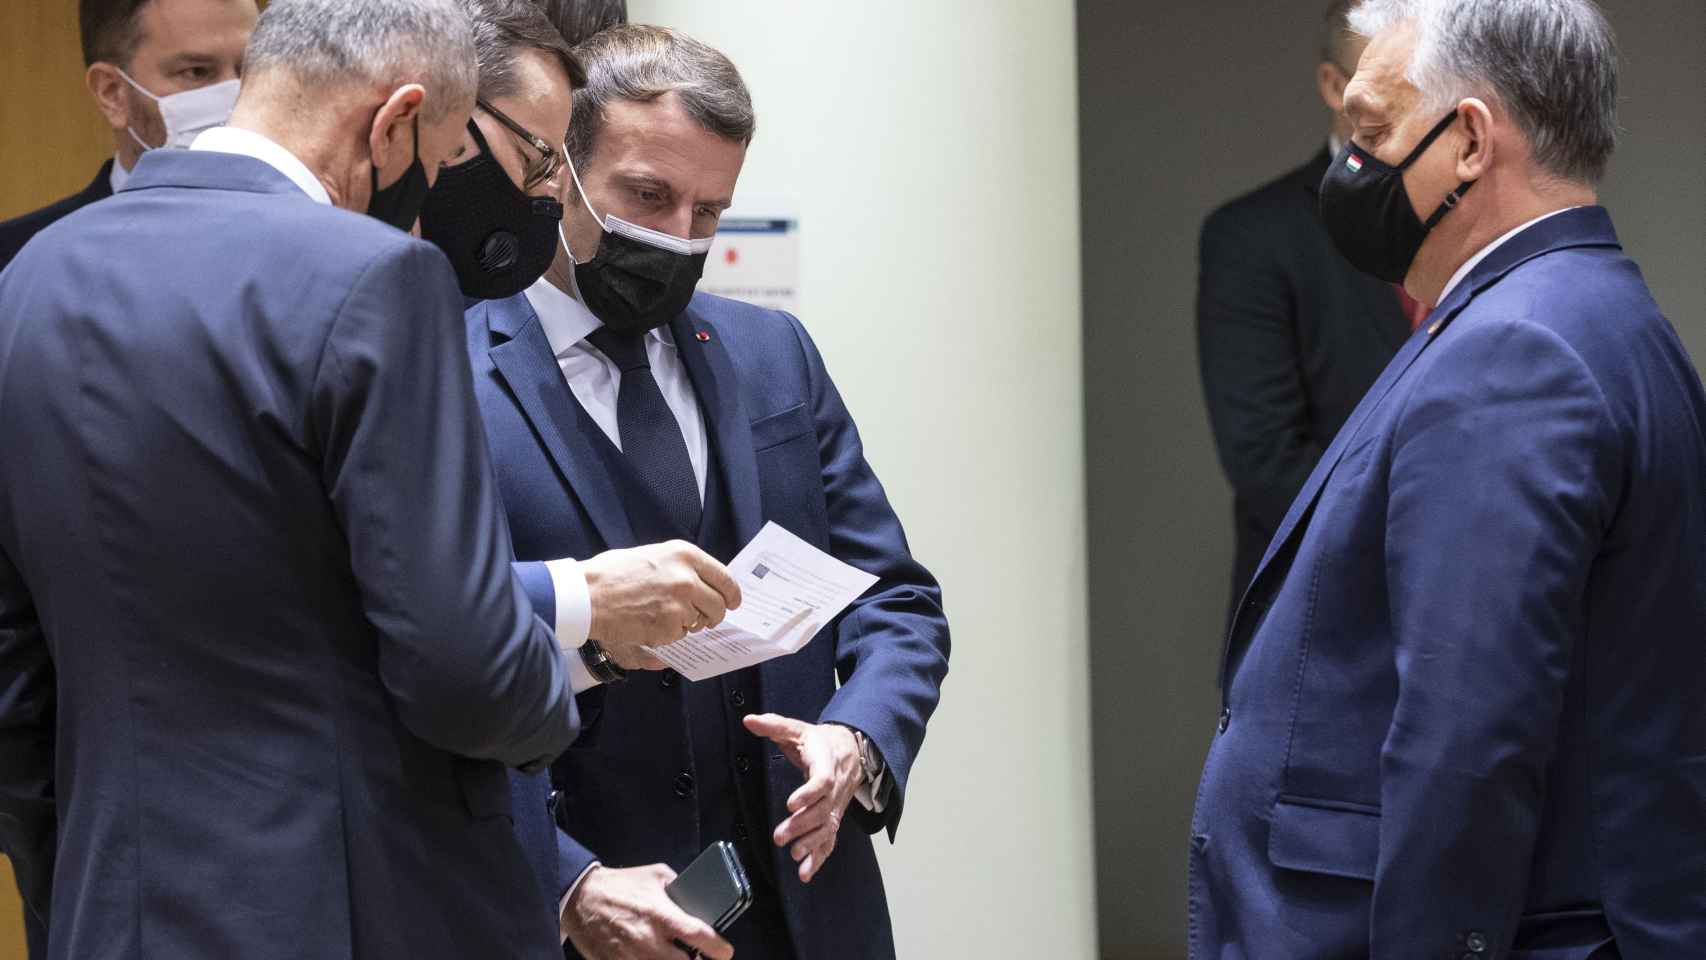 Mateusz Morawiecki y Viktor Orbán repasan el texto con Emmanuel Macron